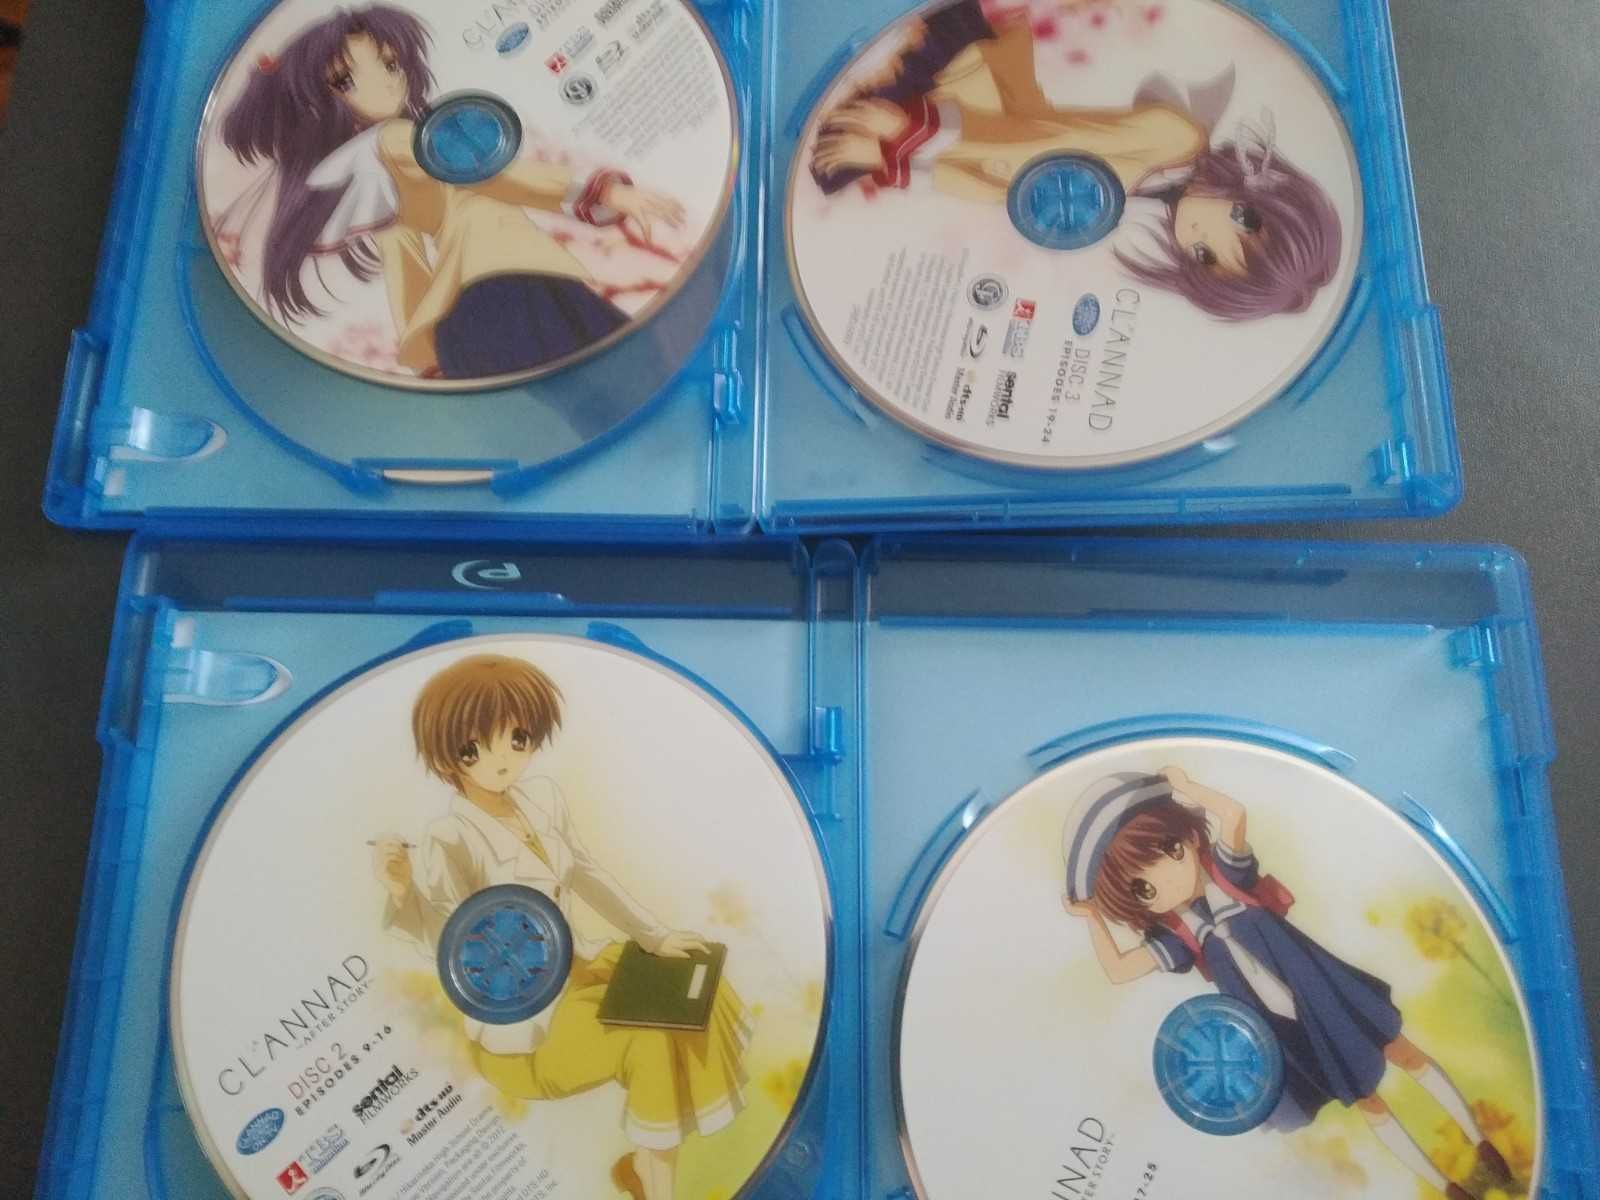 Blu-ray anime Clannad